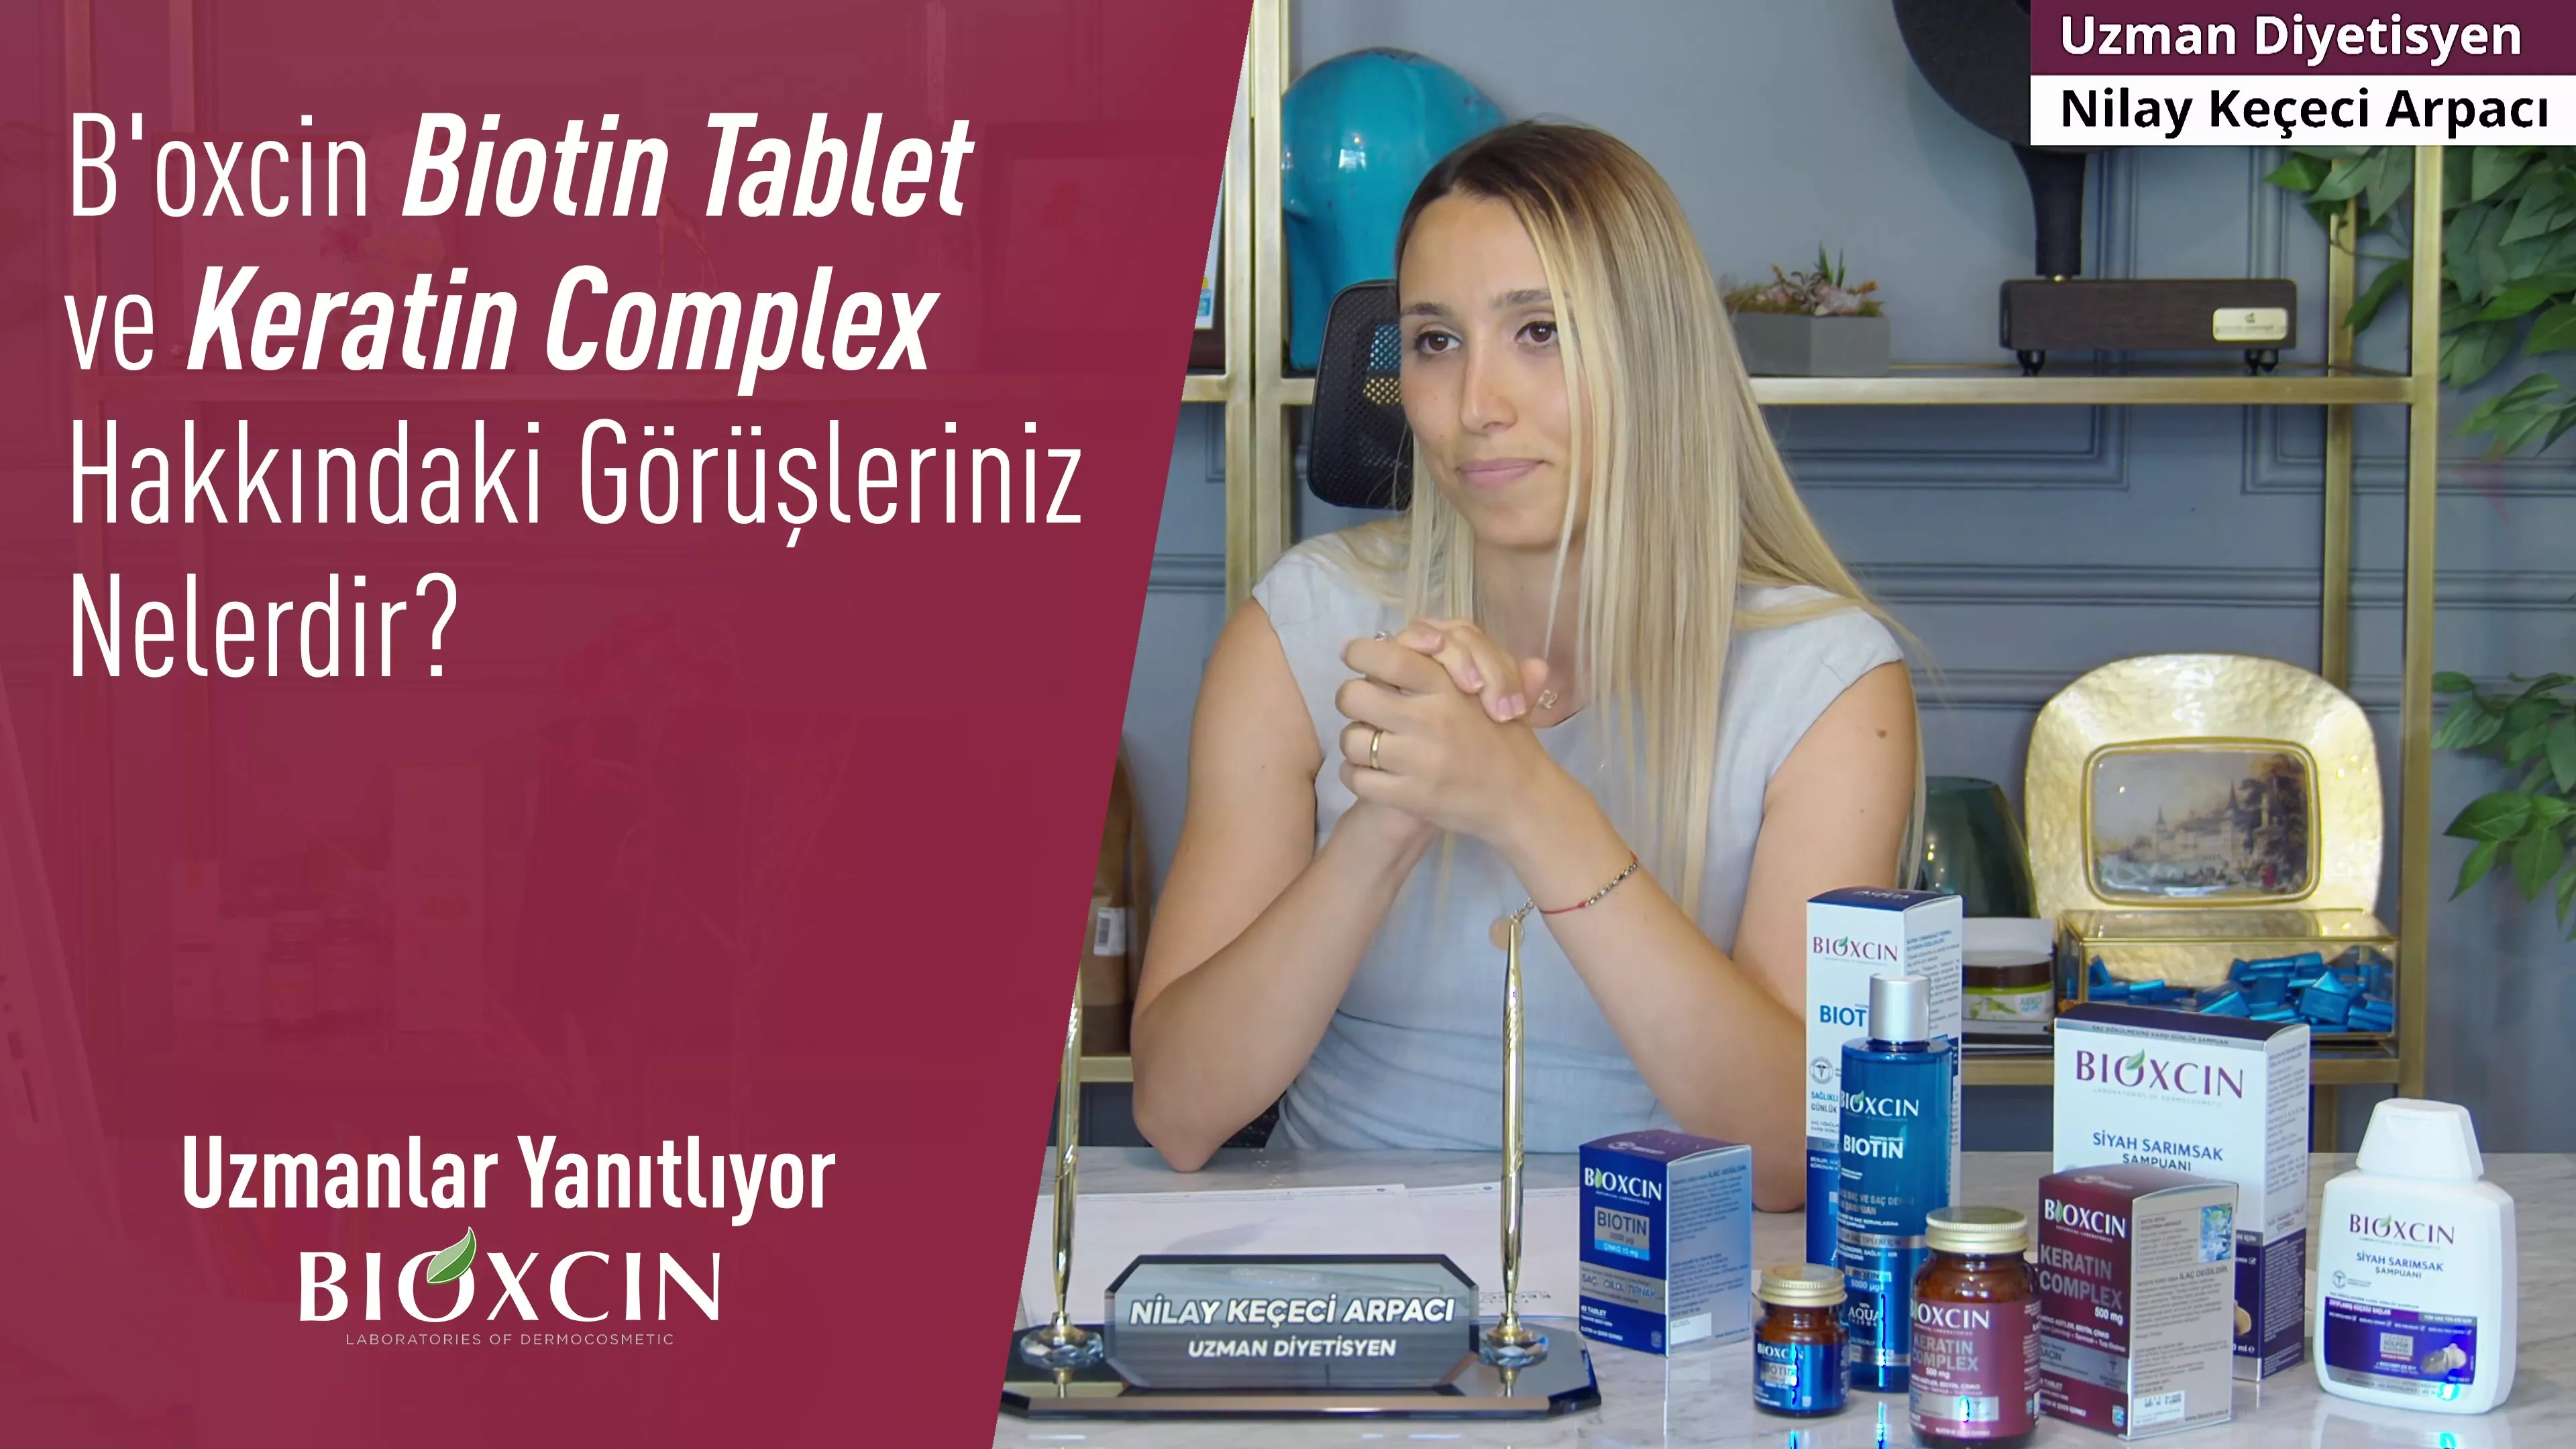 B'oxcin Biotin Tablet ve Keratin Complex Hakkındaki Görüşleriniz Nelerdir?